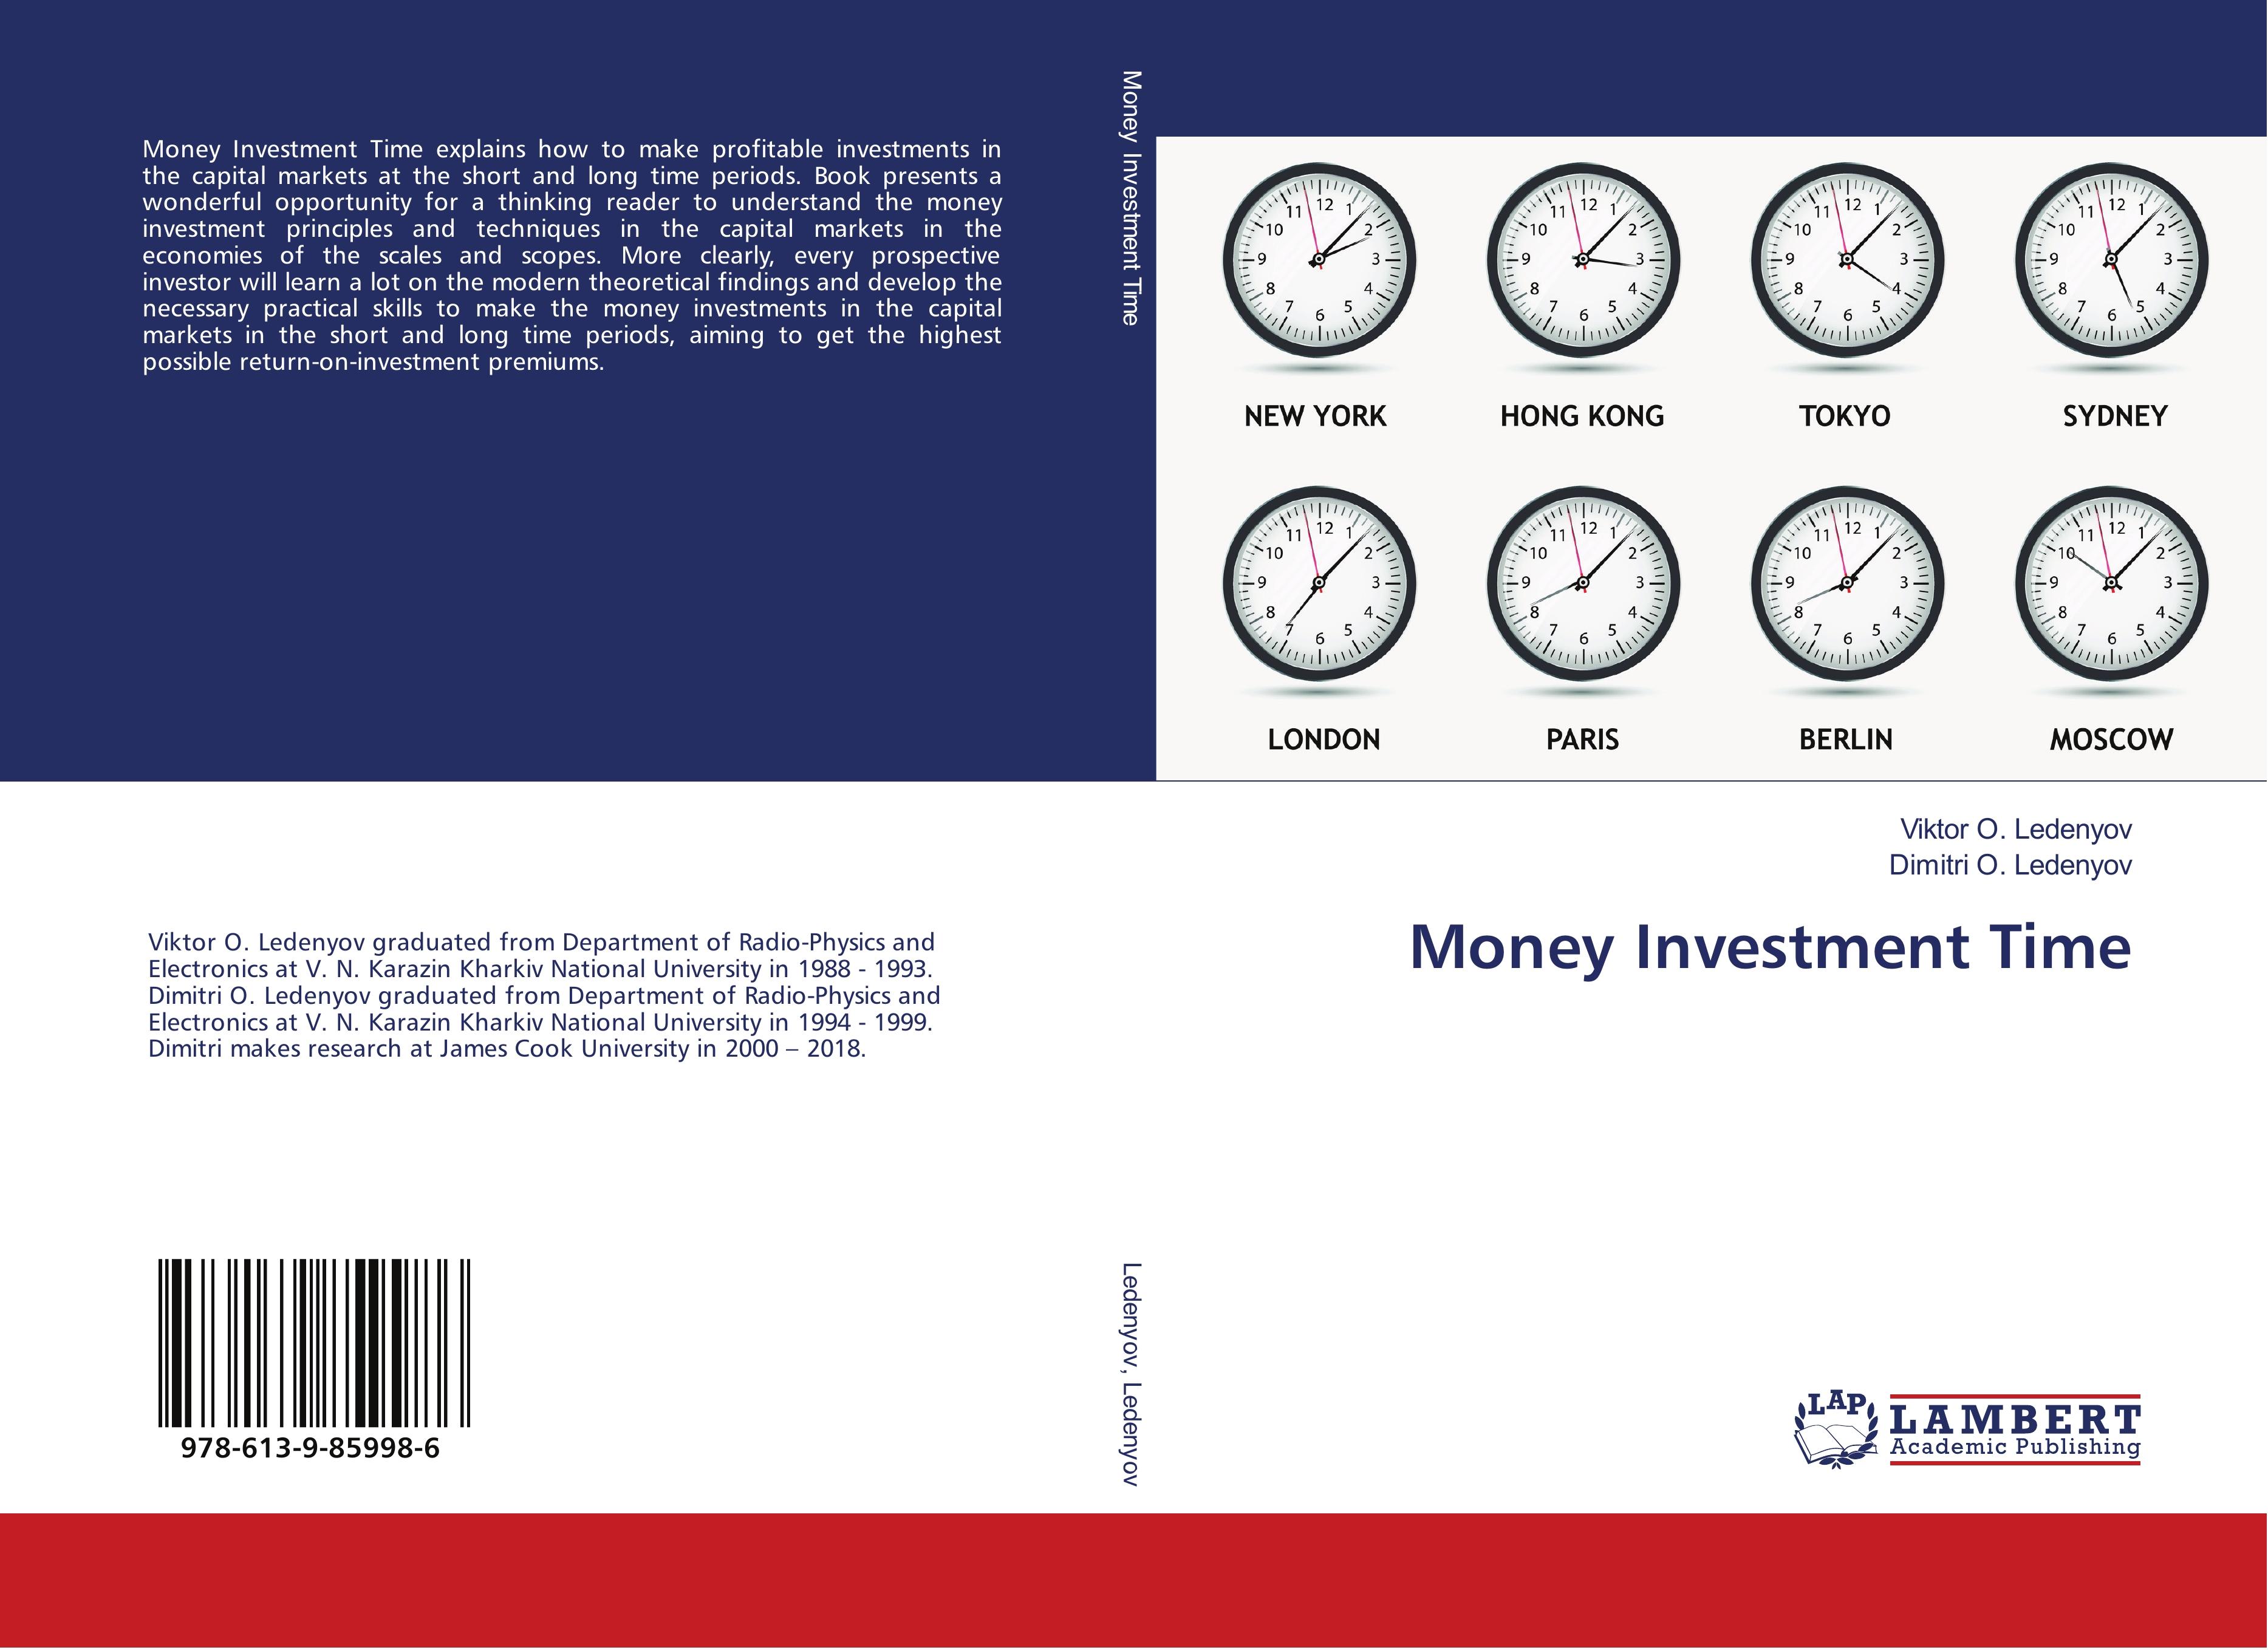 Money Investment Time - Viktor O. Ledenyov Dimitri O. Ledenyov